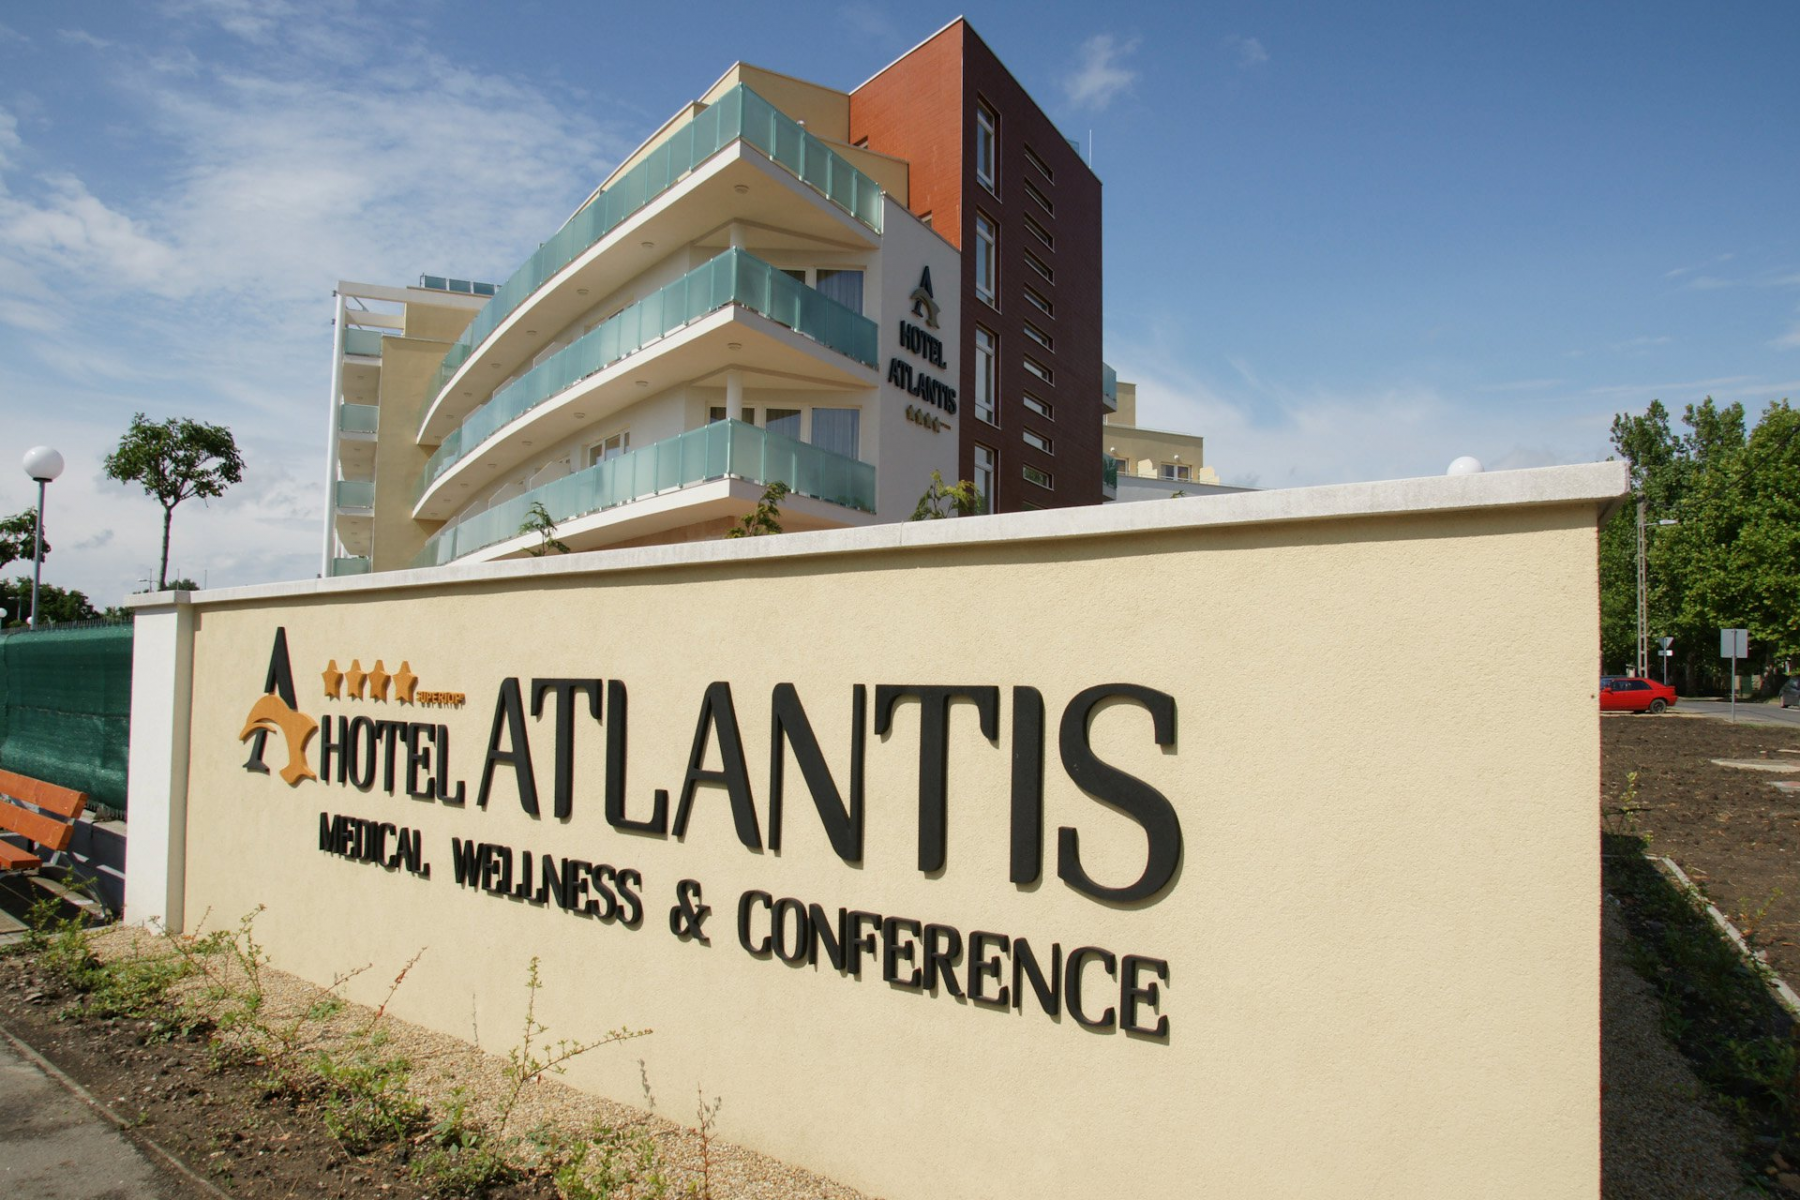 Hotel Atlantis Medical Center & Conference